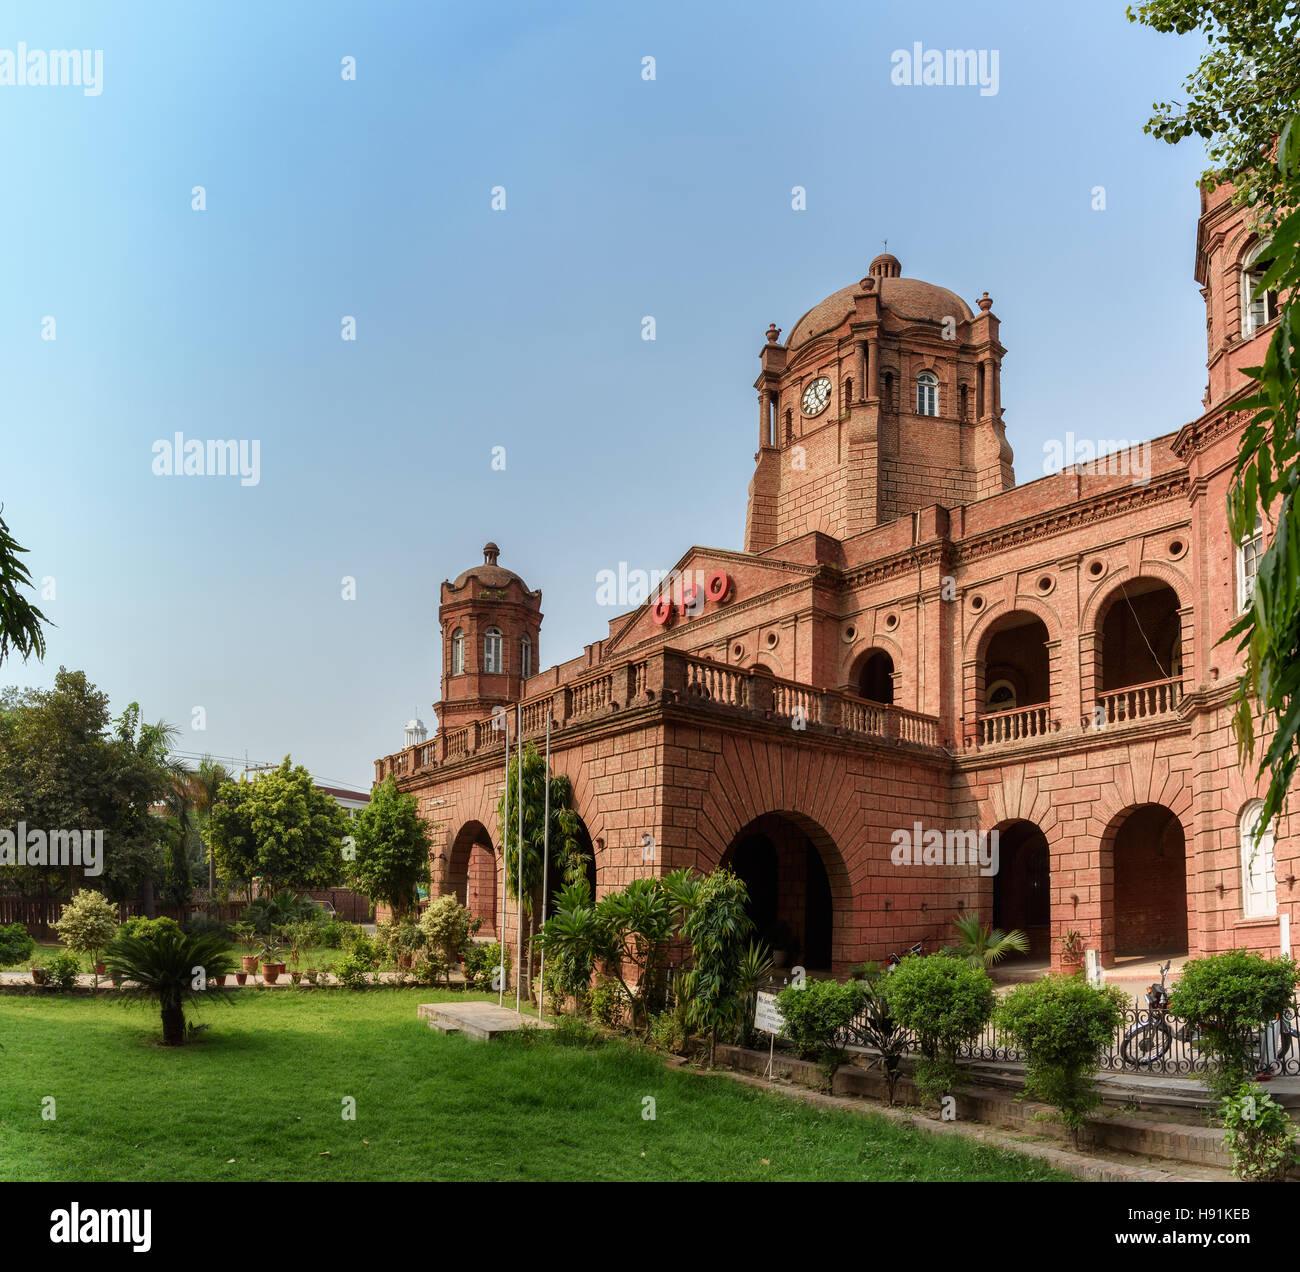 Le bureau de Poste Général est le bureau de poste principal de Lahore, Pakistan. Situé à GPO Chowk sur Mall Road près de Anarkali. Banque D'Images